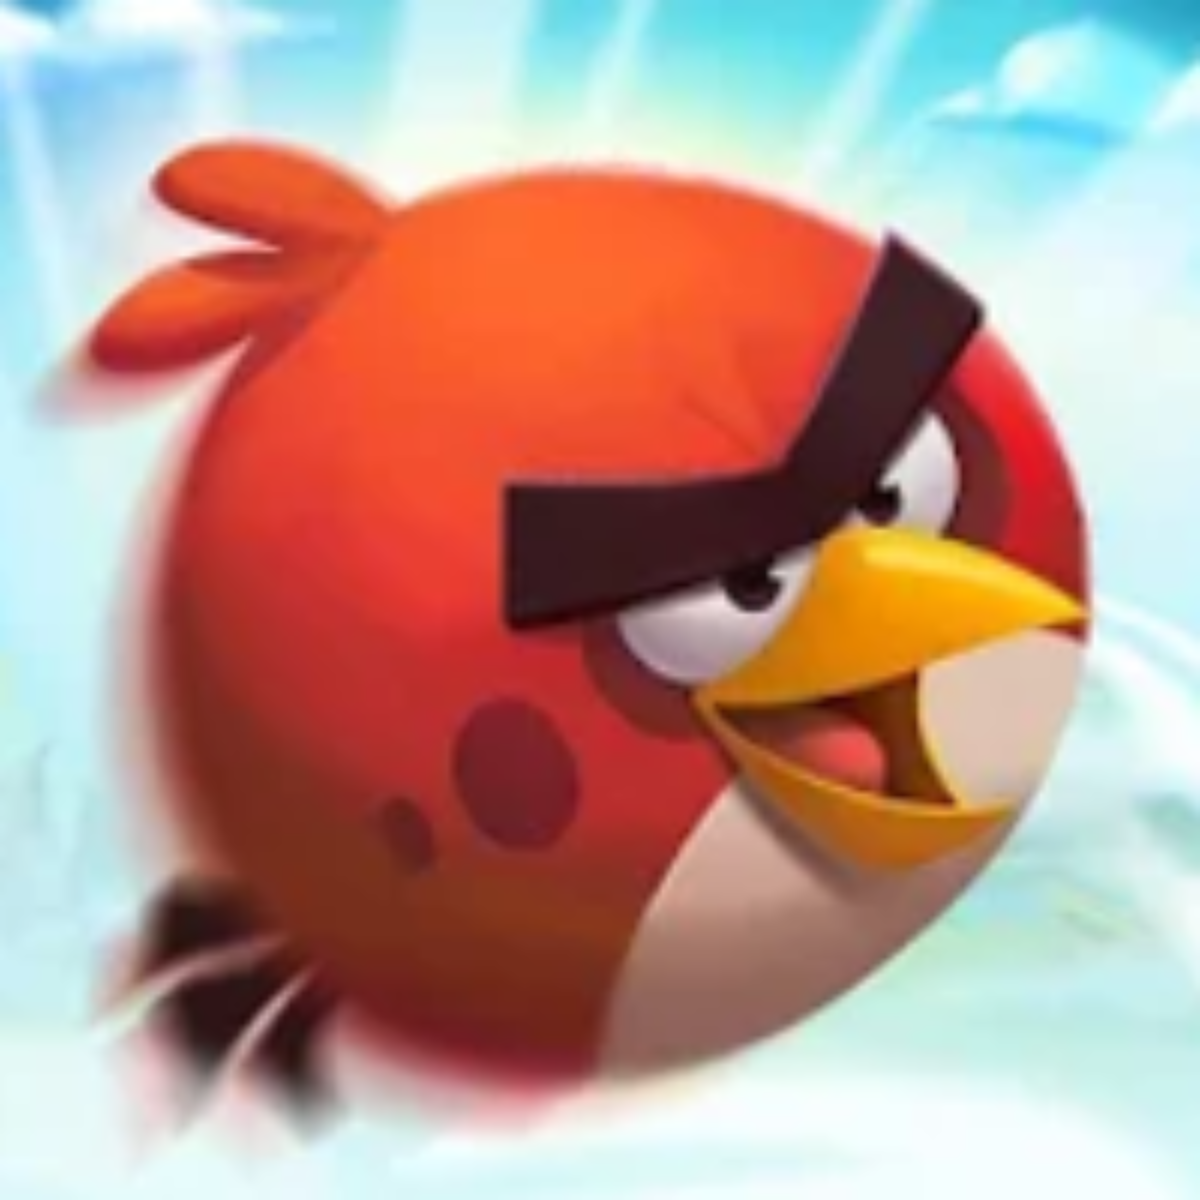 Angry Birds 2 v3.18.1 Apk Mod Dinheiro Infinito - W Top Games Mod